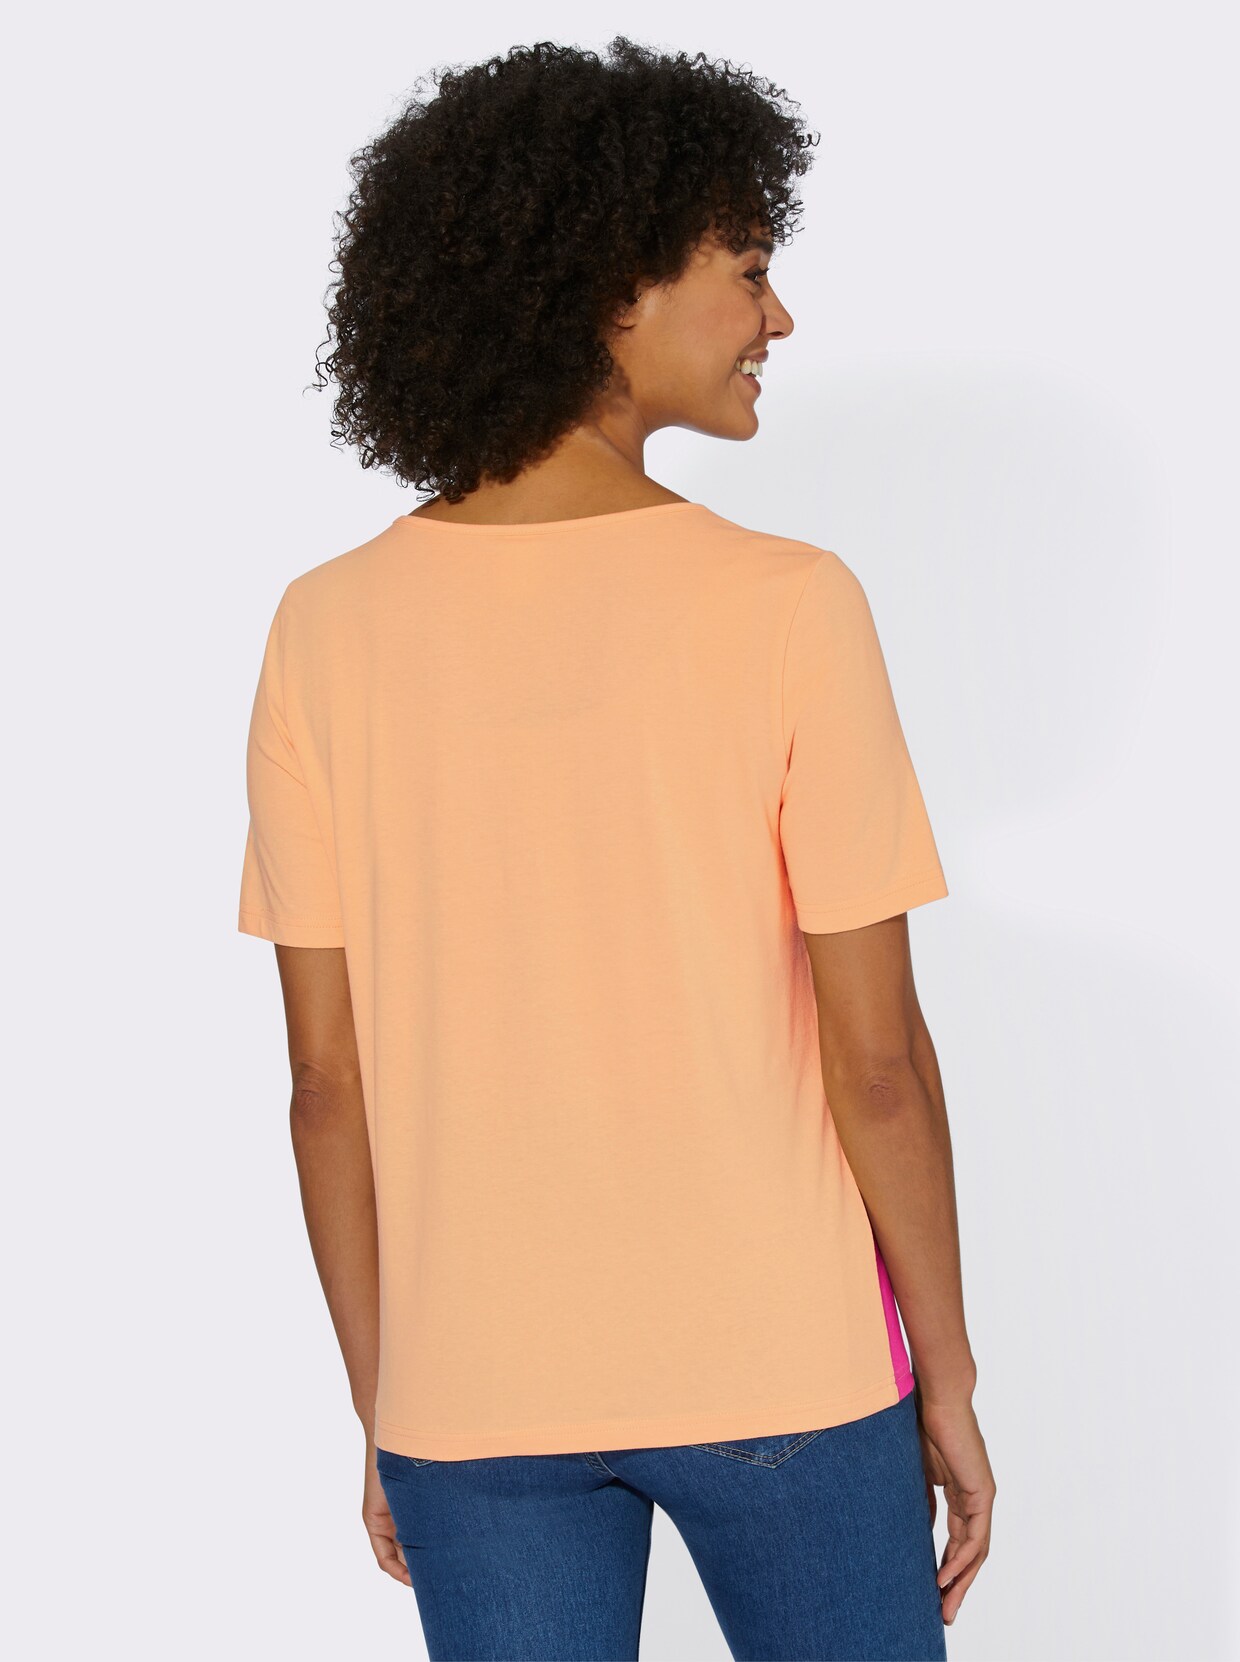 Tričko s krátkým rukávem - meruňková-vzor